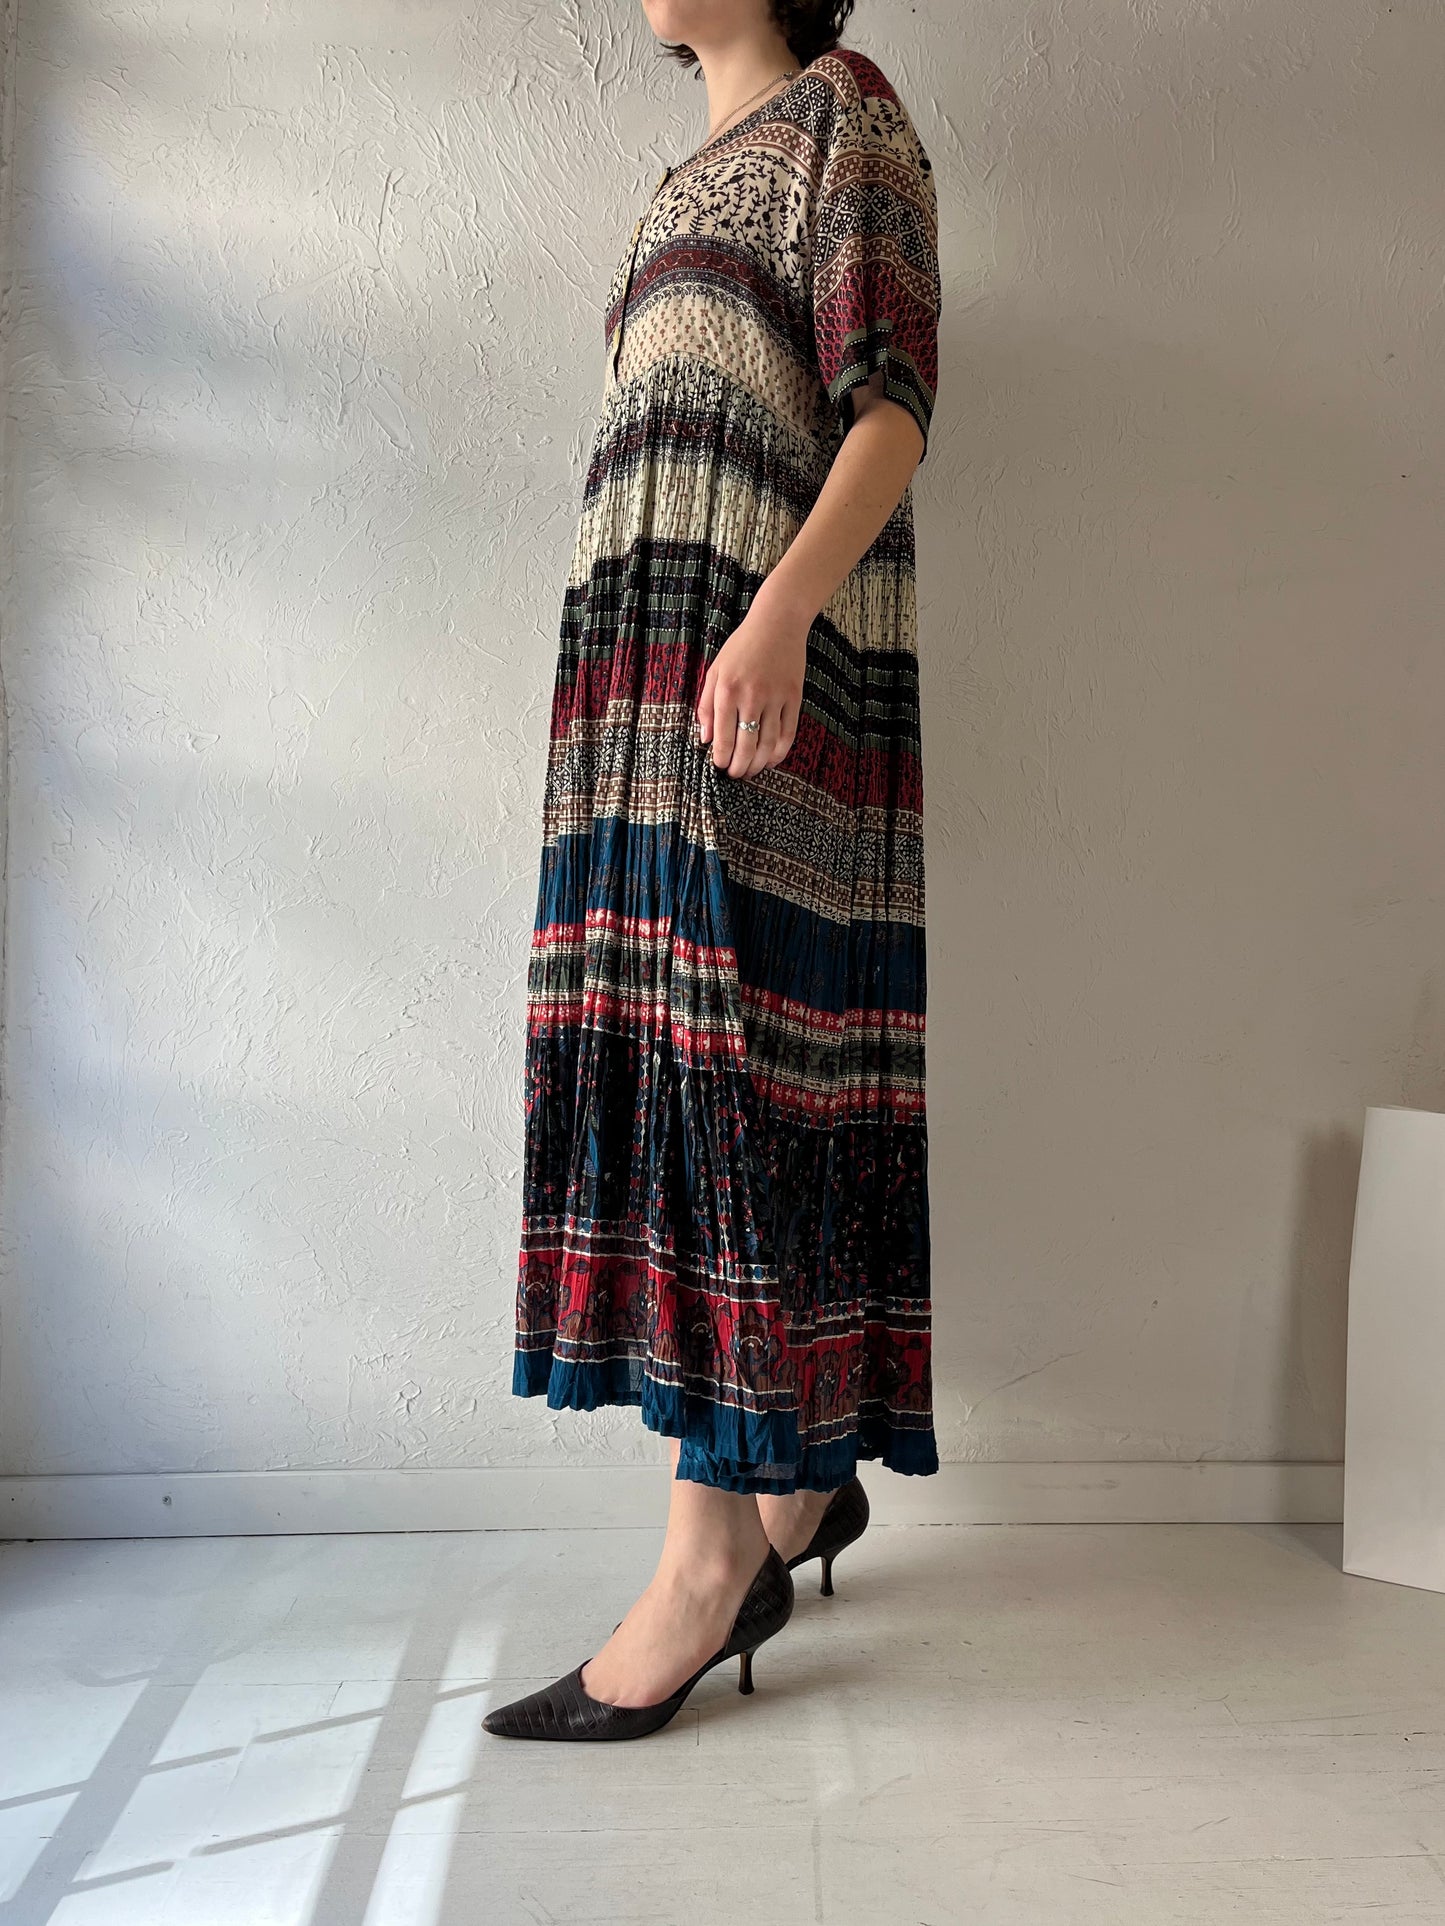 90s 'Erika Taylor' Cotton Maxi Dress / Medium